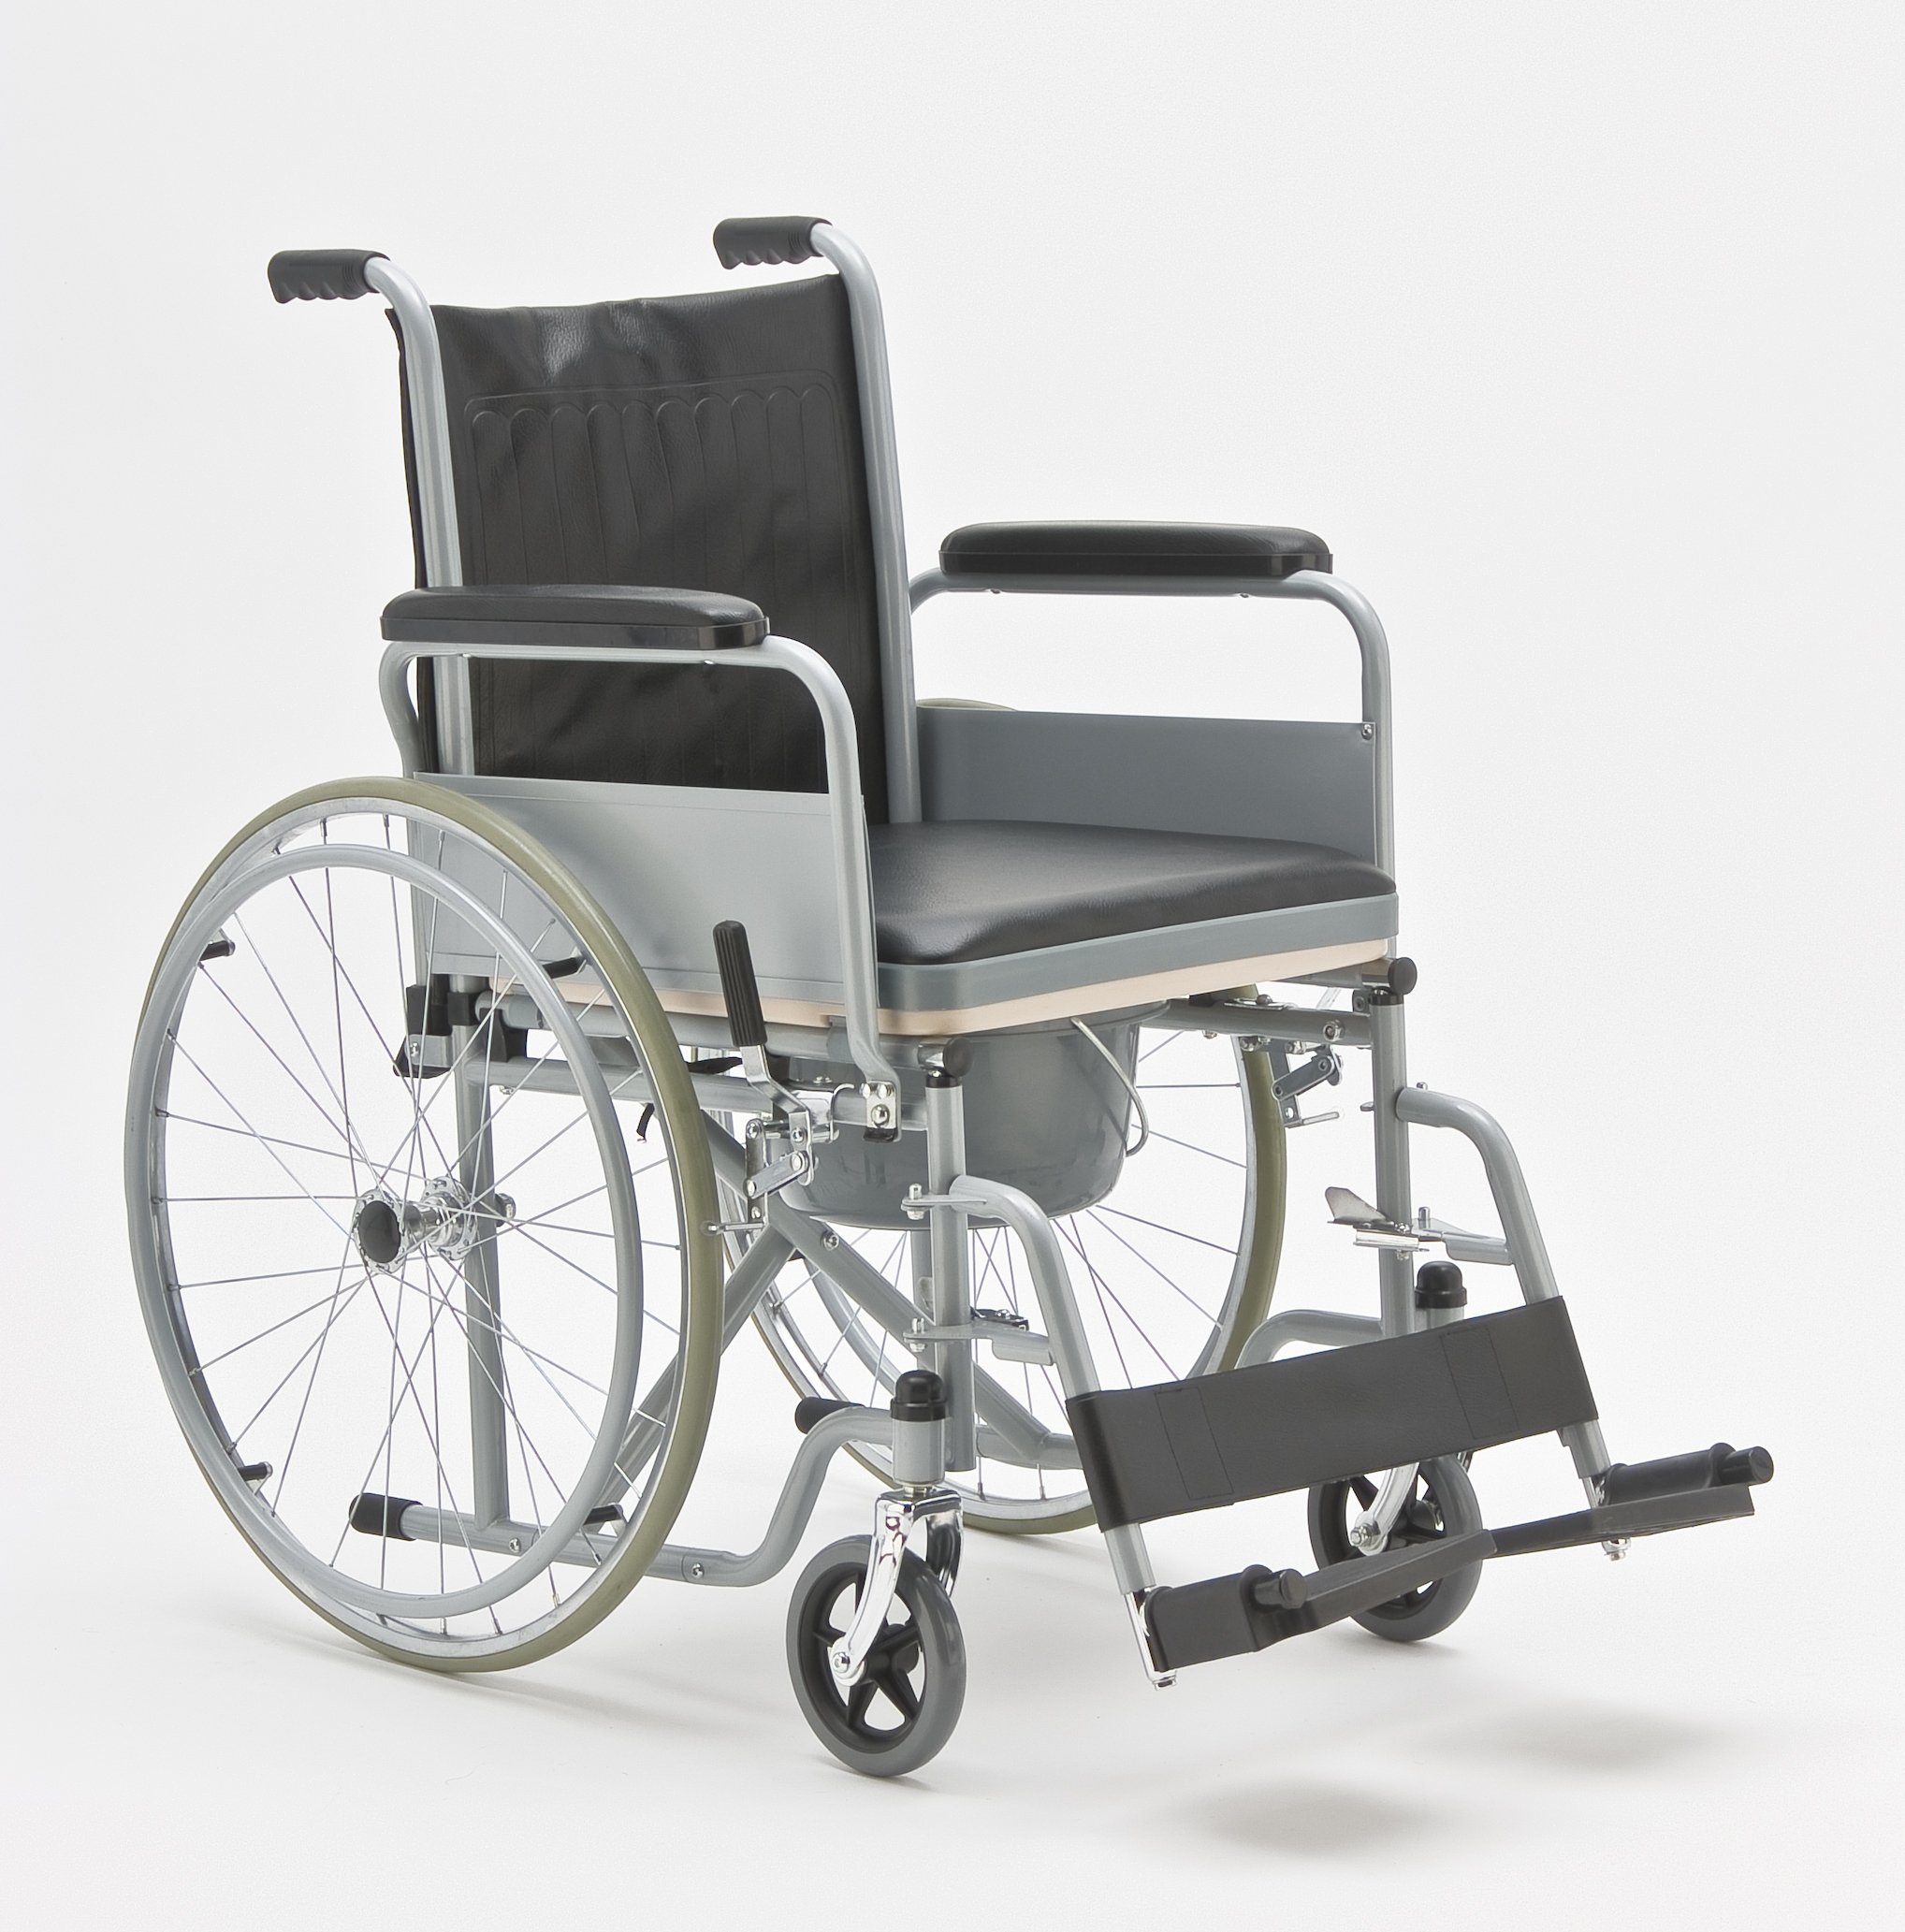 Купить сидение для инвалида. Кресло-коляска Армед fs682. Армед кресло коляска с санитарным оснащением. Армед 682 кресло коляска. Кресло-коляска с санитарным оснащением fs682.